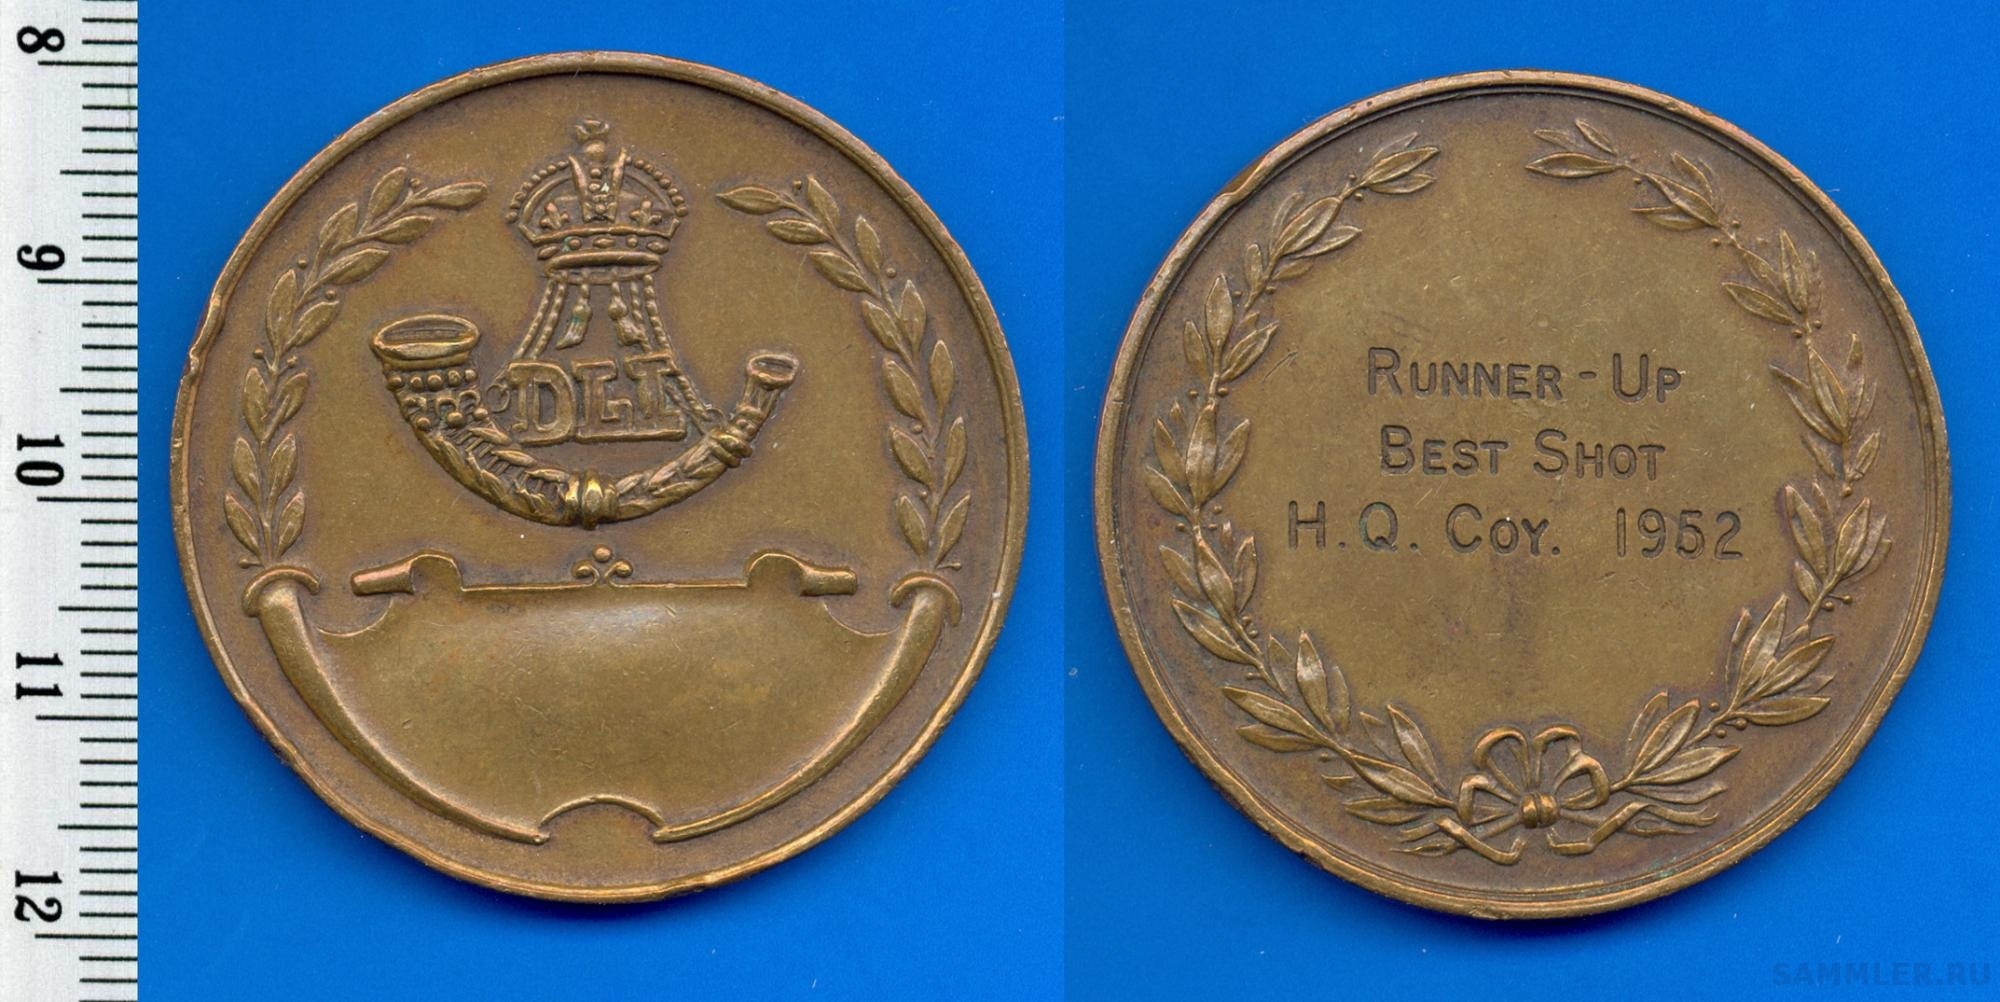 DLI - Medal for Runner-Up Best Shot H.Q. Coy 1952.jpg